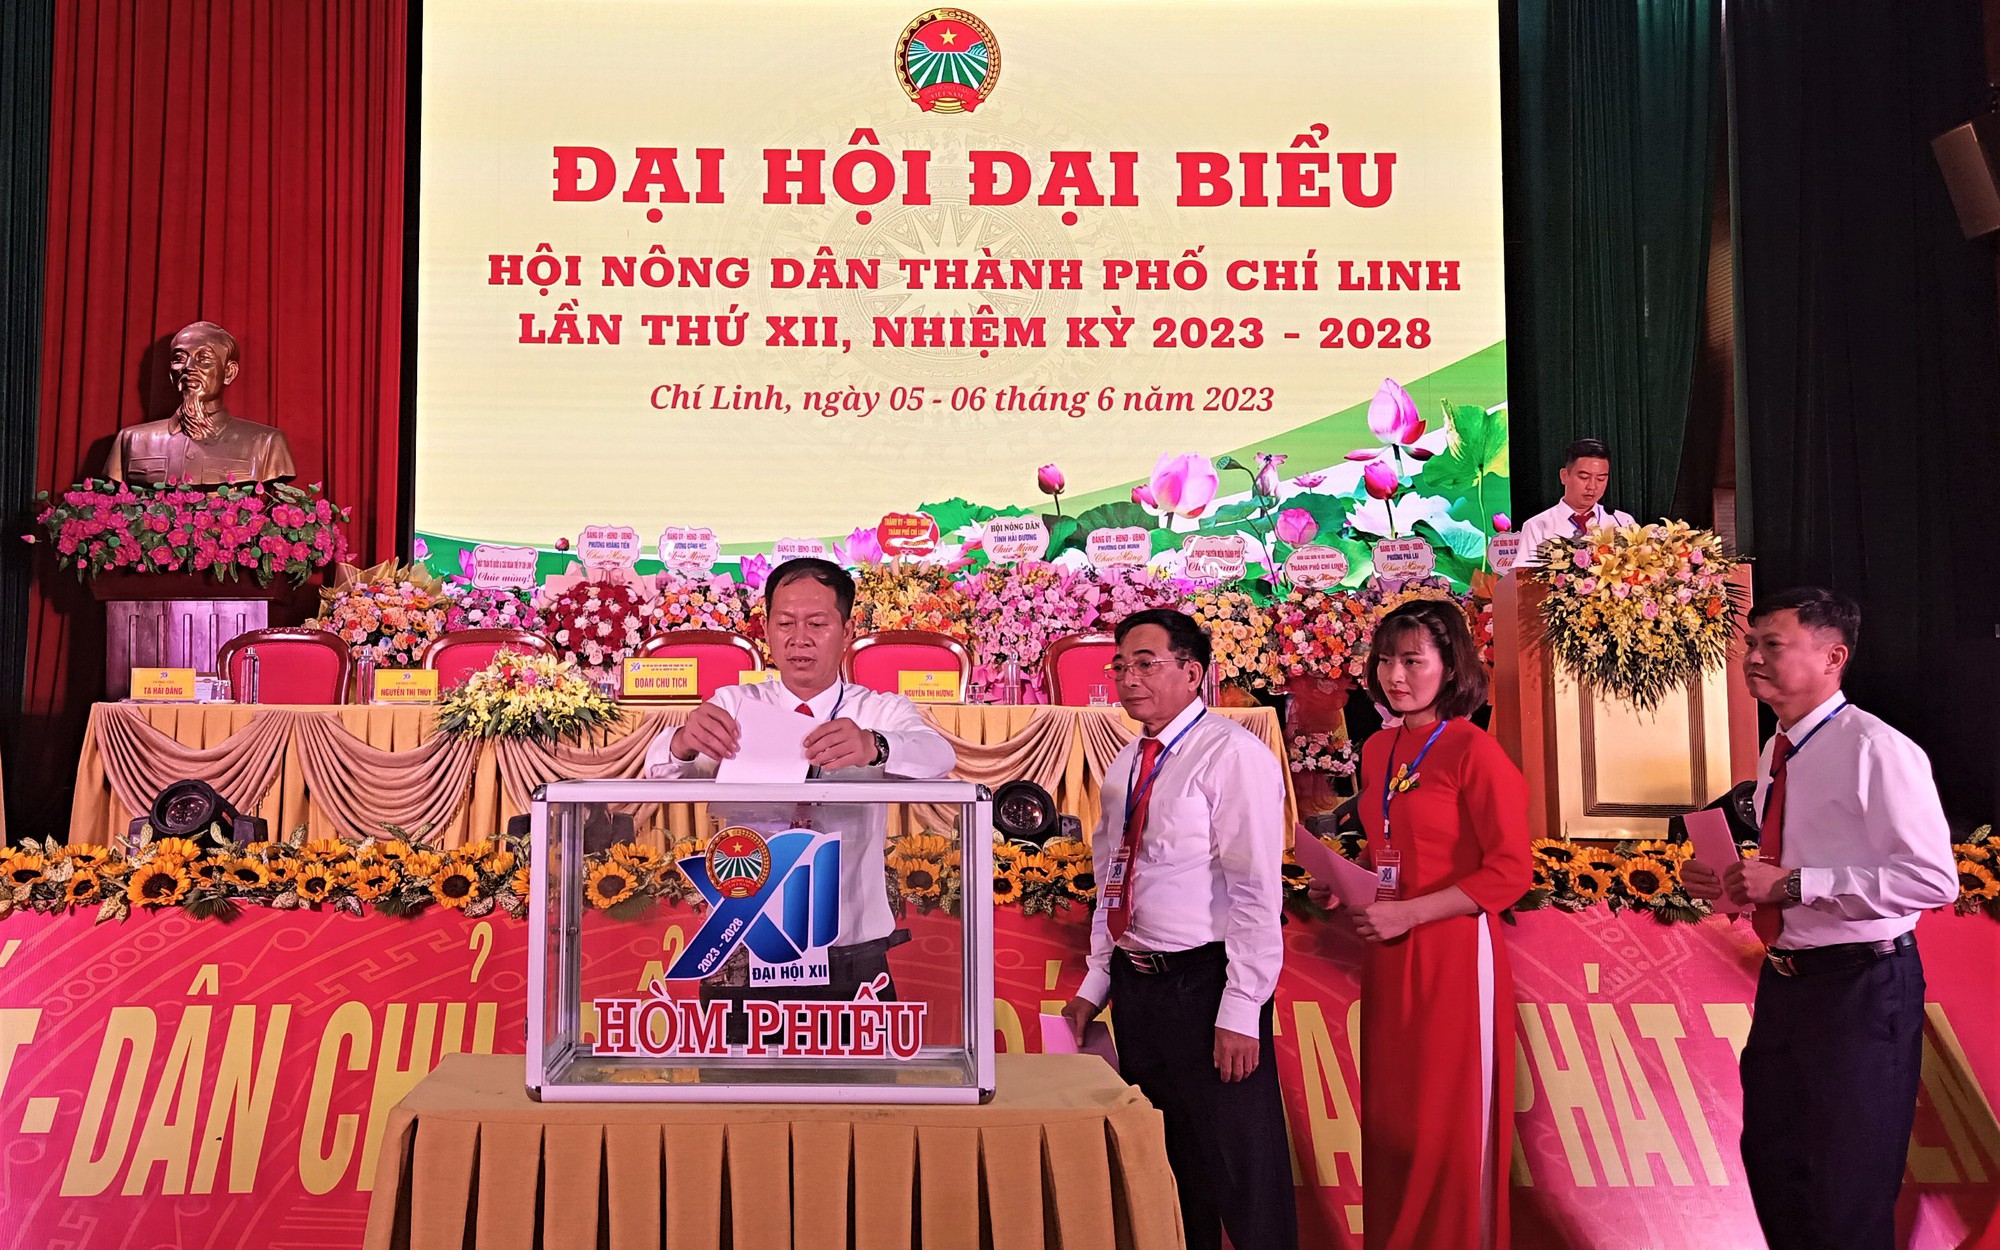 Chủ tịch Hội Nông dân TP Chí Linh nhiệm kỳ 2023 - 2028 là ông Nguyễn Như Nguyện